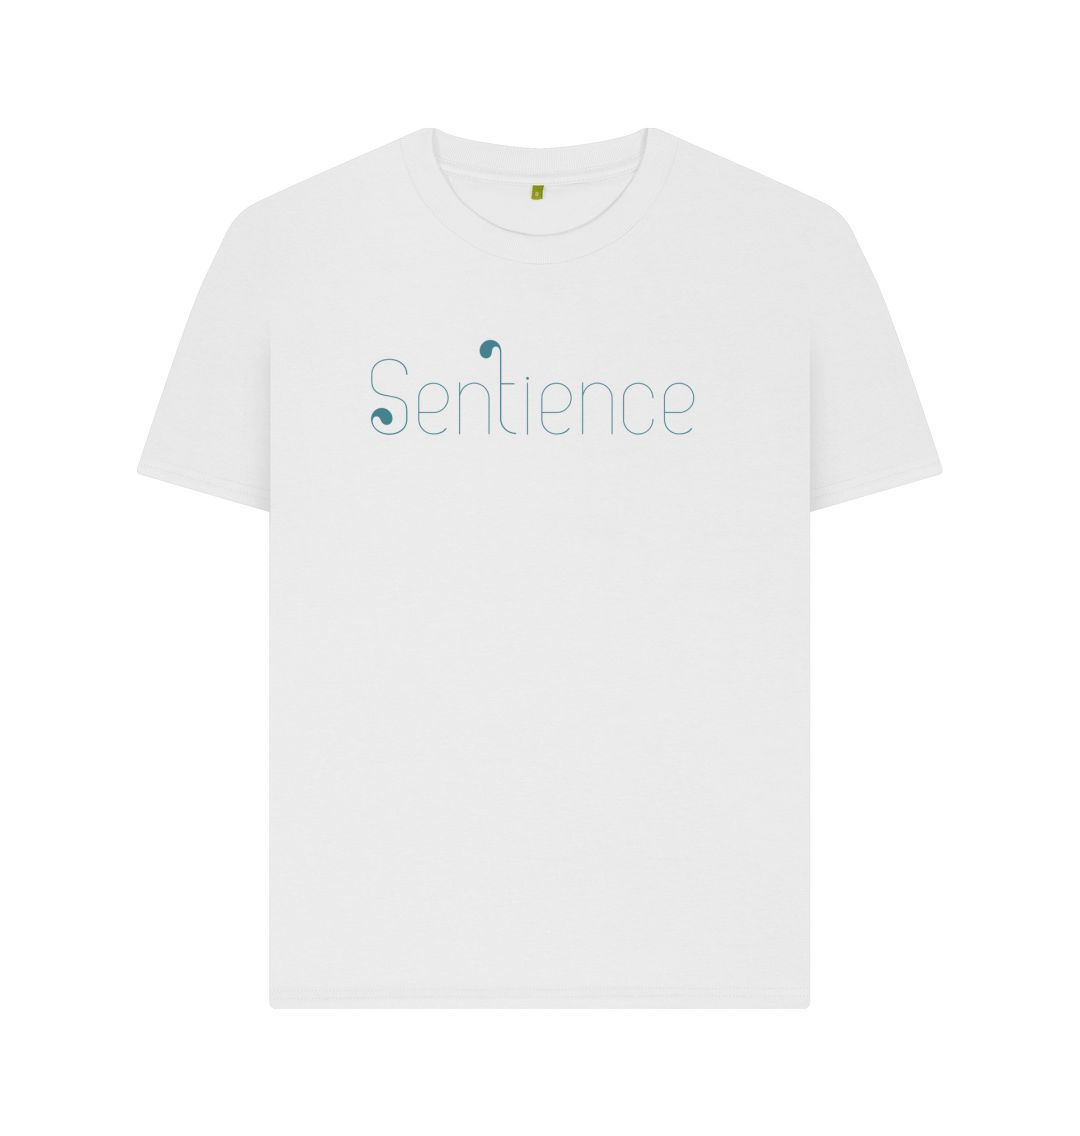 White Sentience T-Shirt